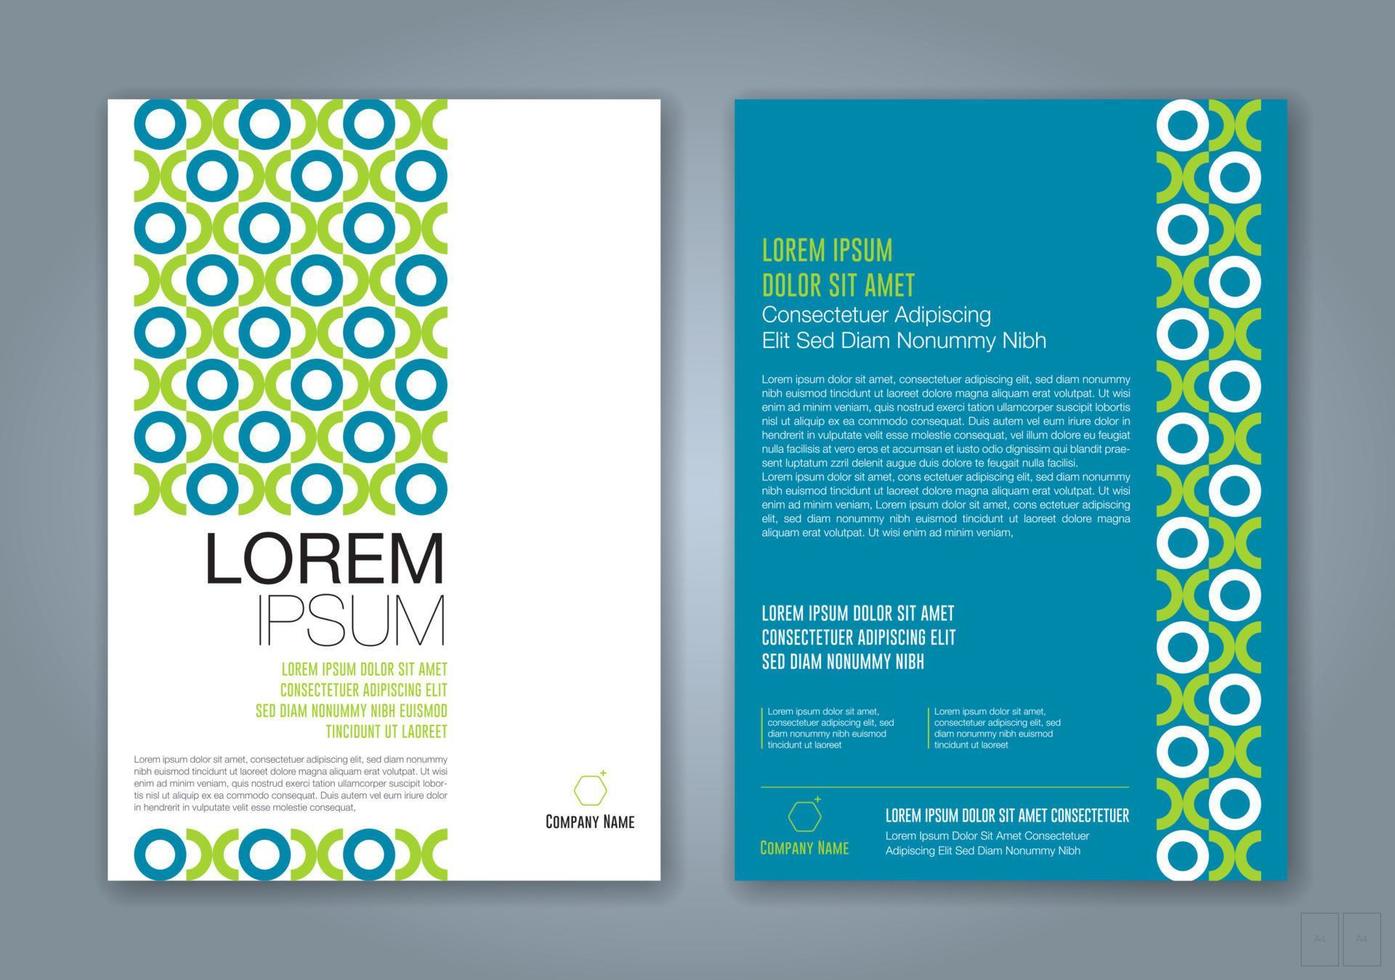 forme geometriche minime design sfondo per il poster del volantino dell'opuscolo della copertina del libro del rapporto annuale di affari vettore